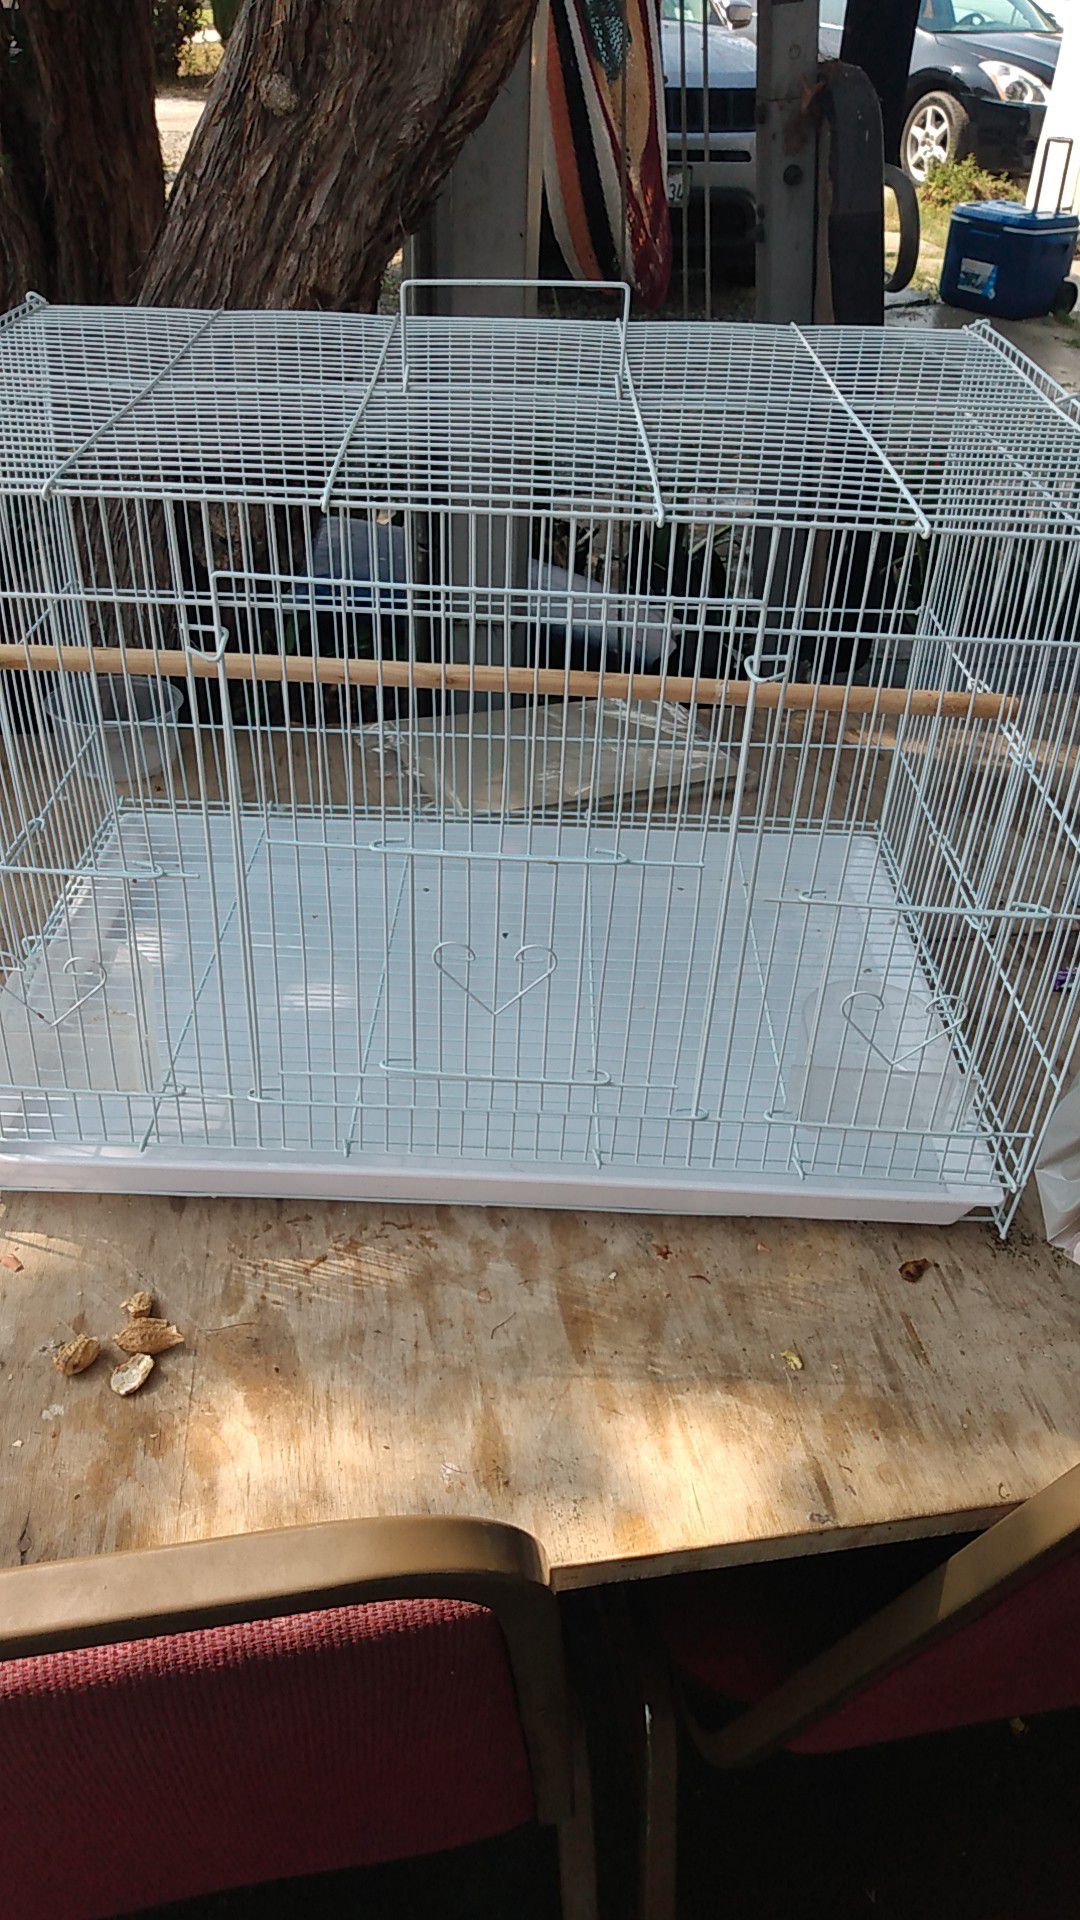 Bird cage for "birds" 🐦